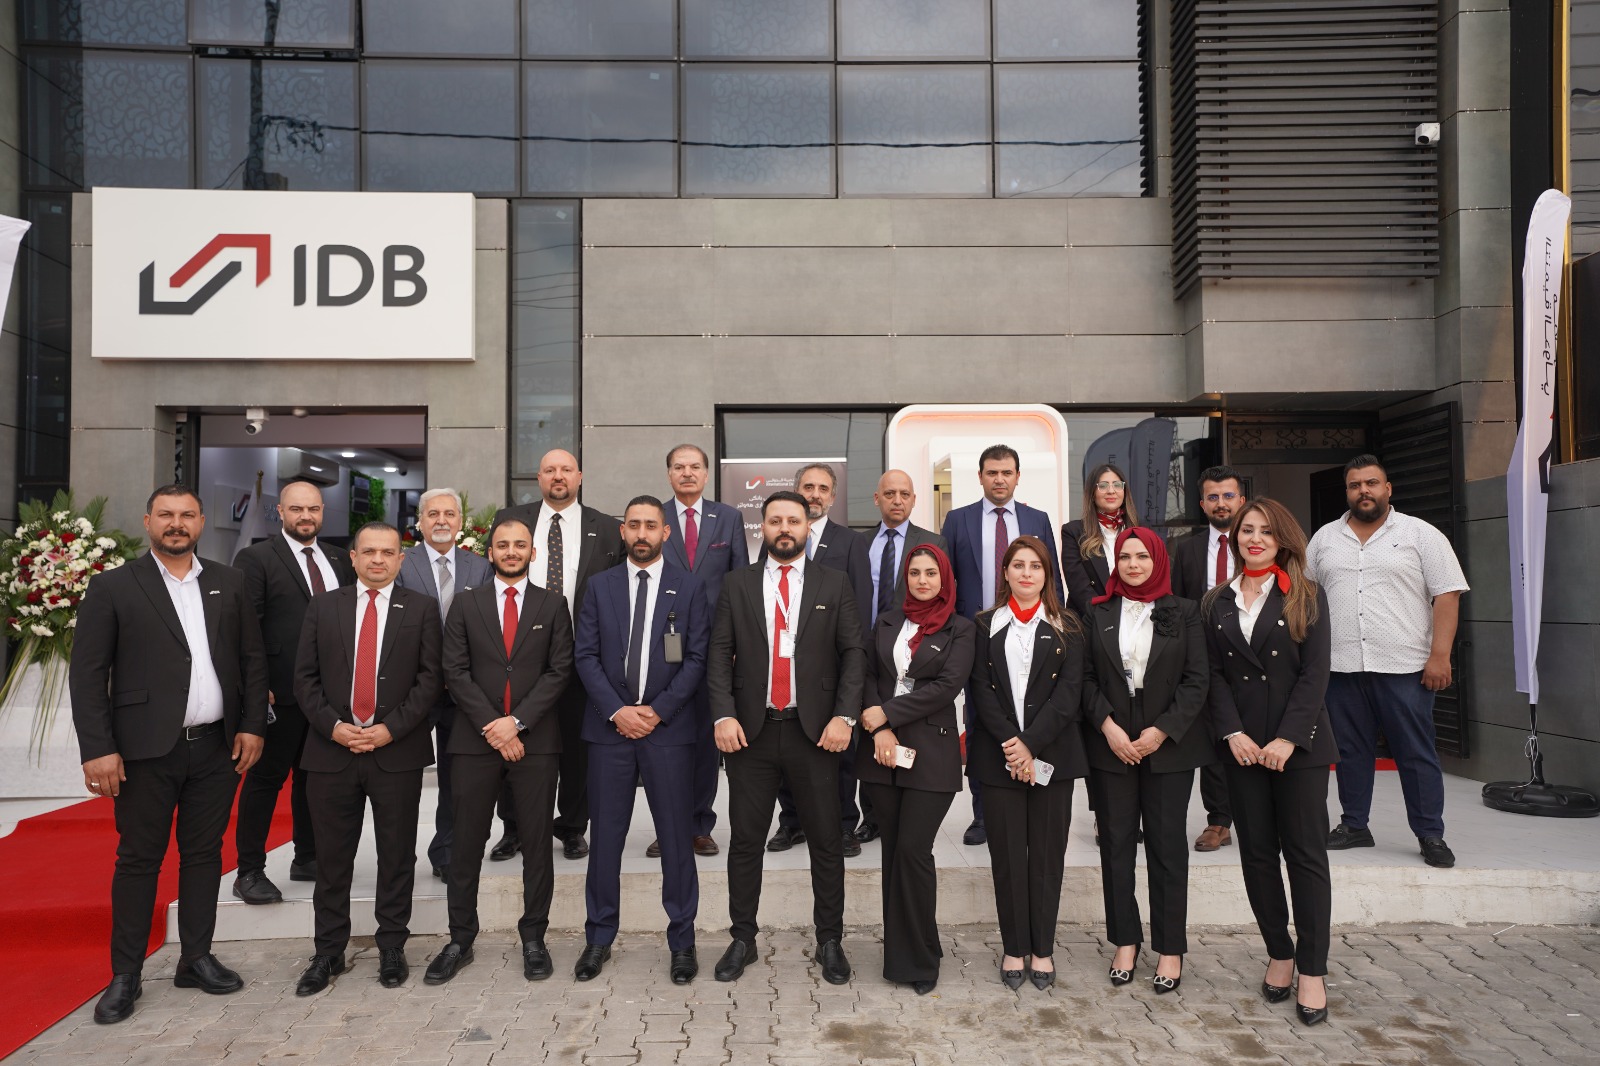 مصرف التنمية الدولي يُعلن افتتاح فرعه الجديد في أربيل